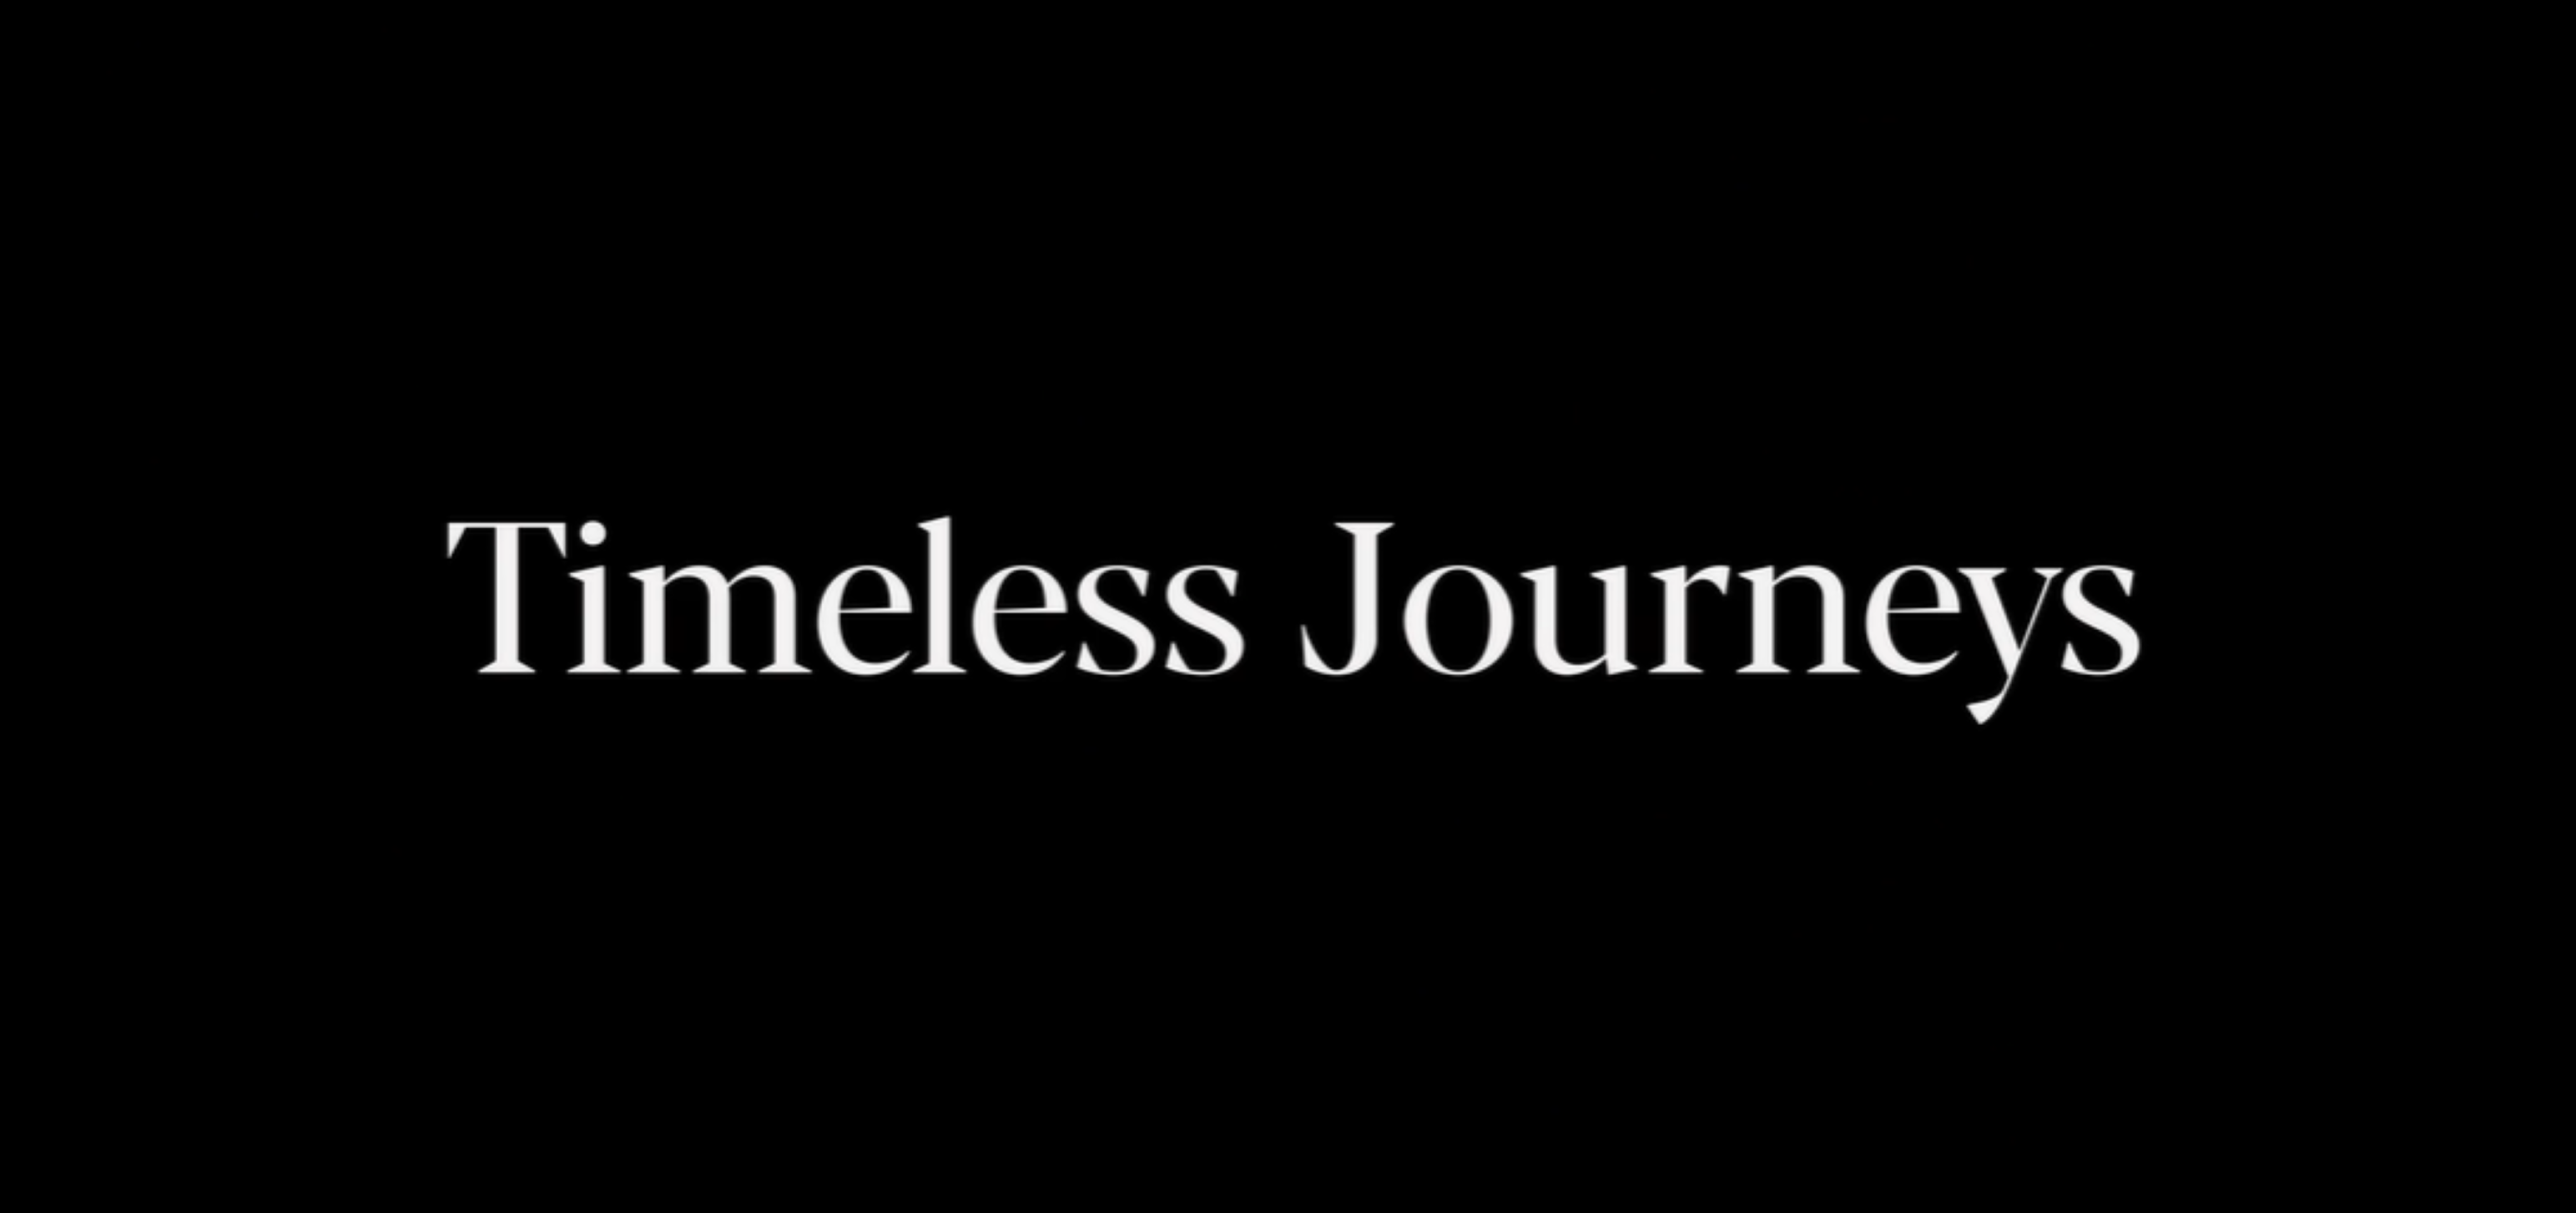 Timeless Journeys